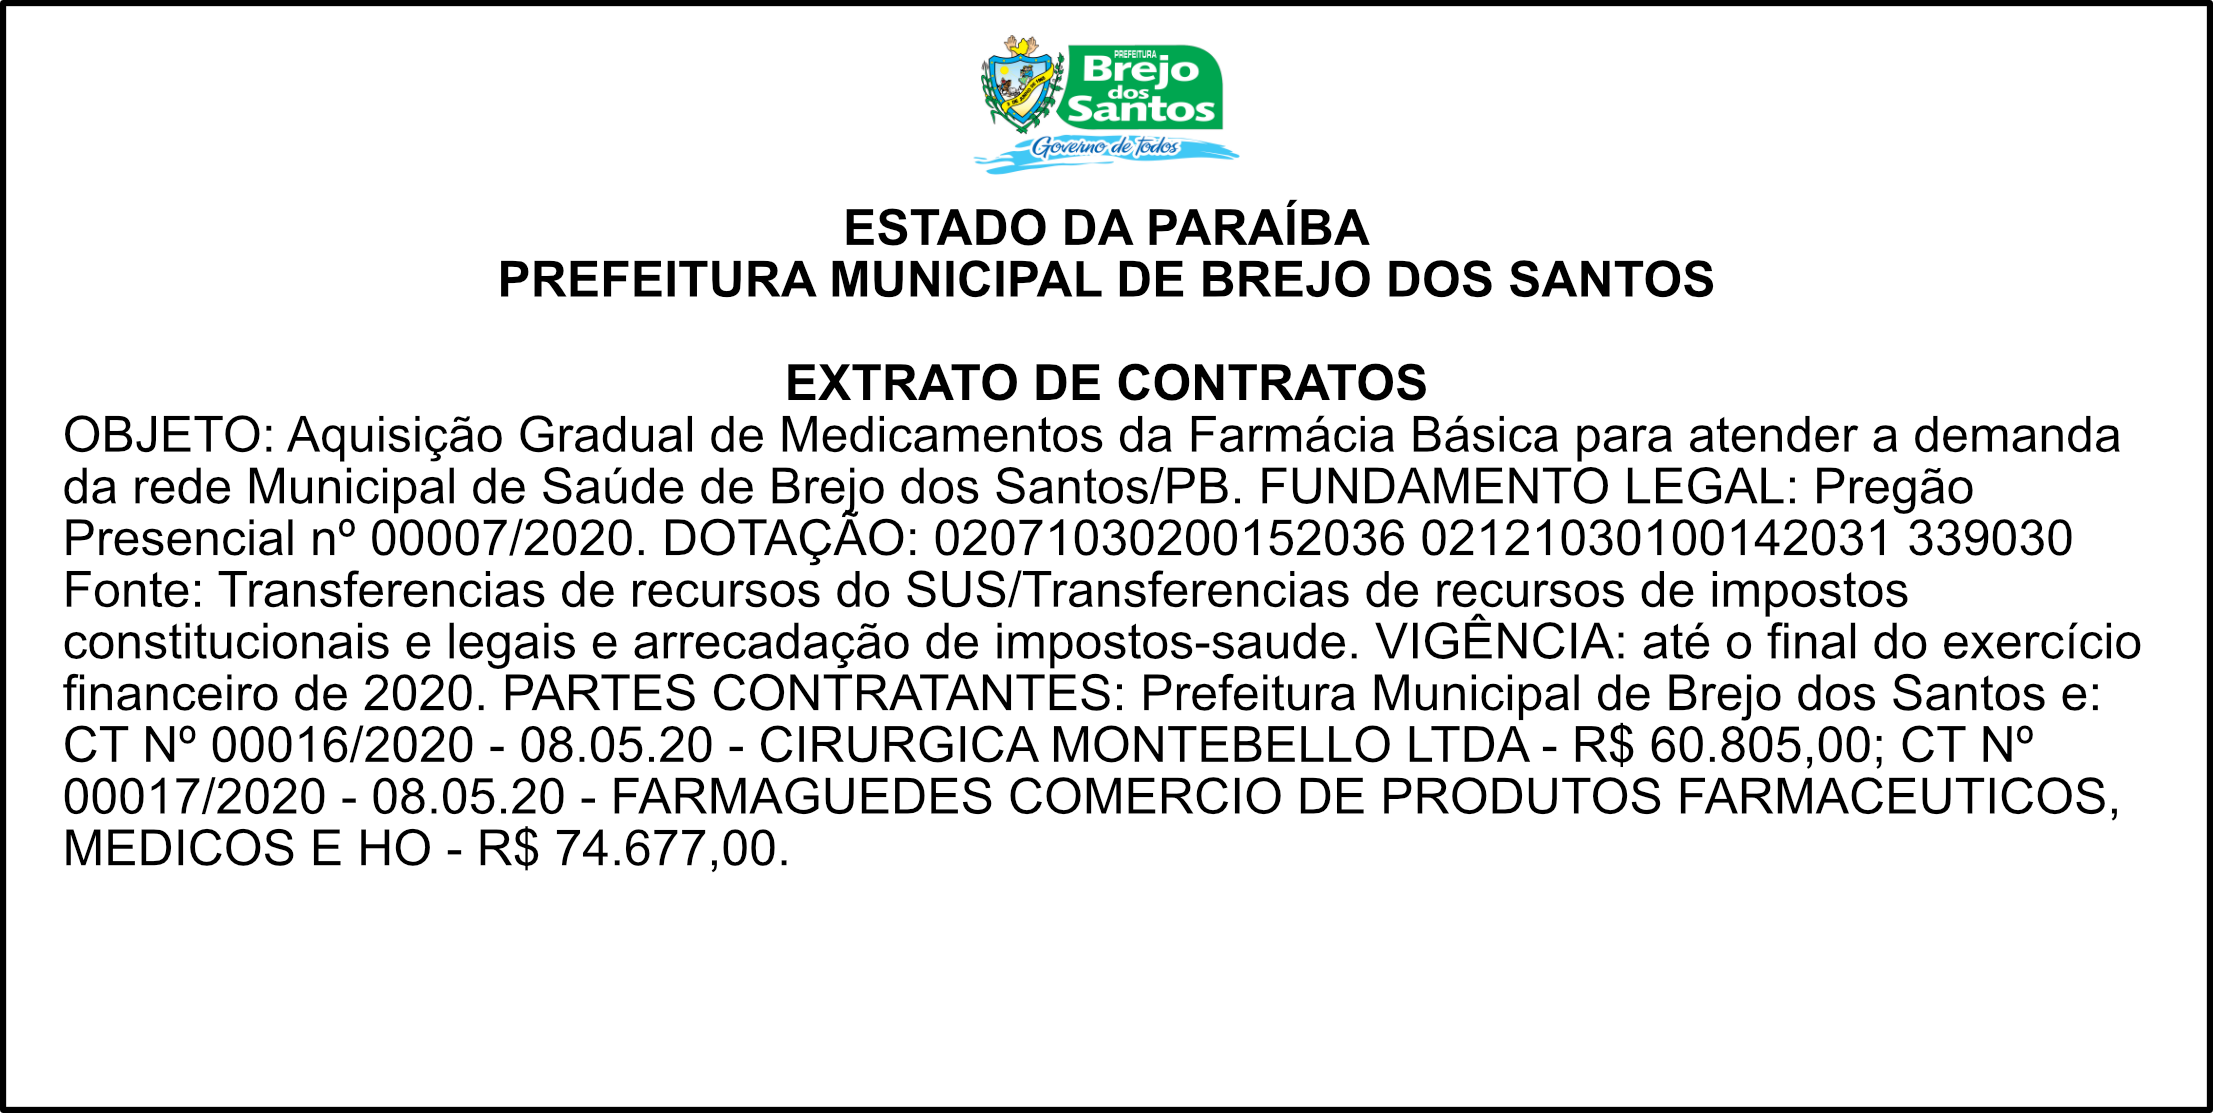 PREFEITURA MUNICIPAL DE BREJO DOS SANTOS – EXTRATO DE CONTRATOS – PREGÃO PRESENCIAL Nº 00007/2020